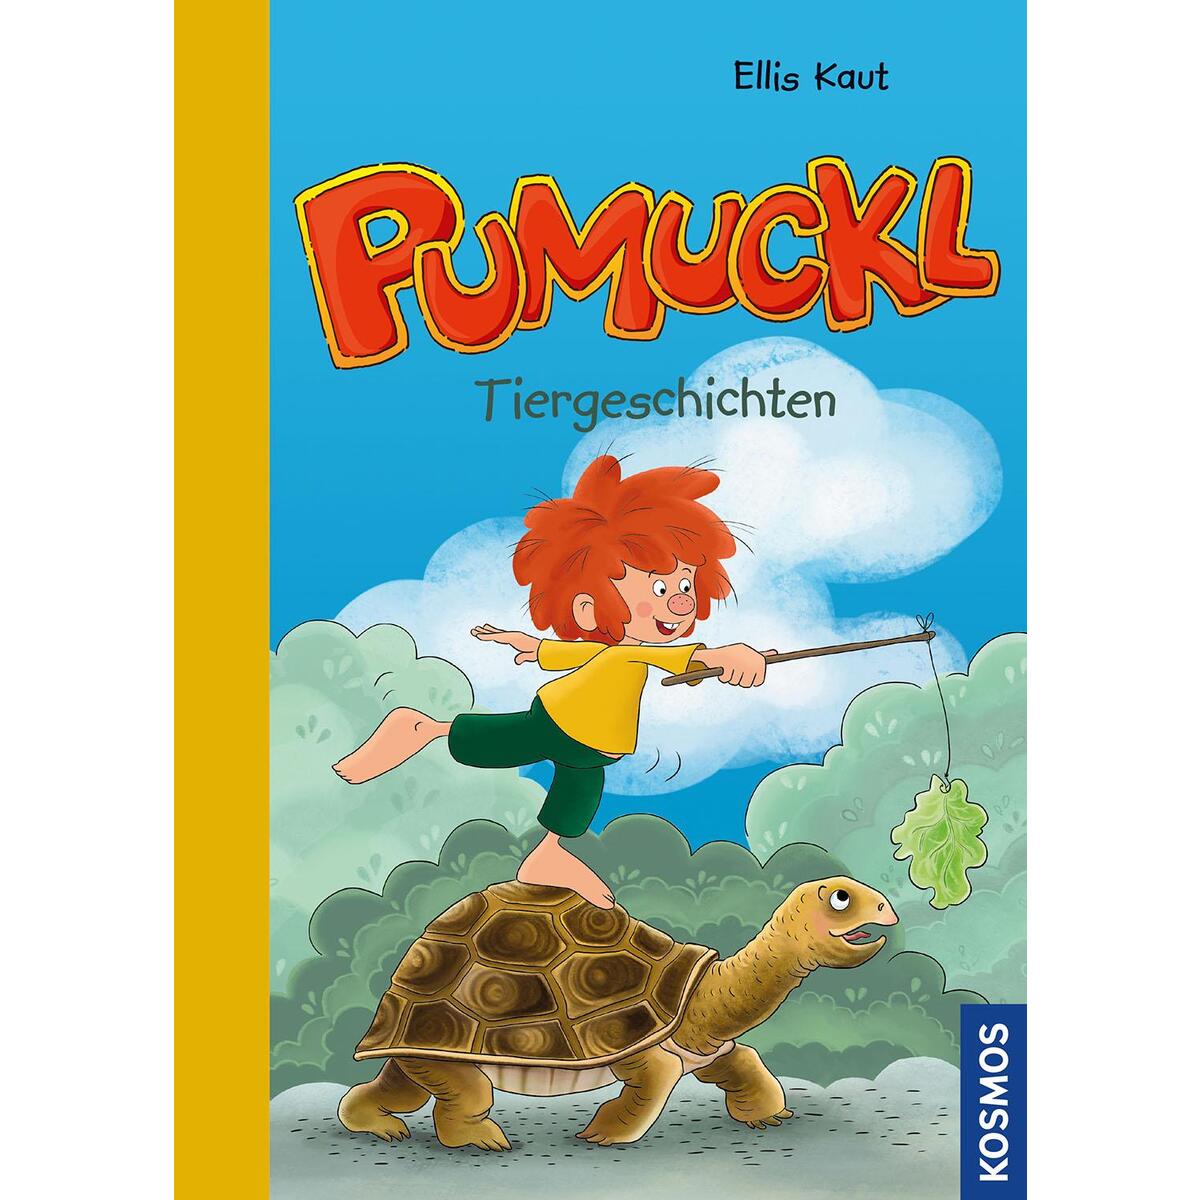 Pumuckl, Tiergeschichten von Franckh-Kosmos